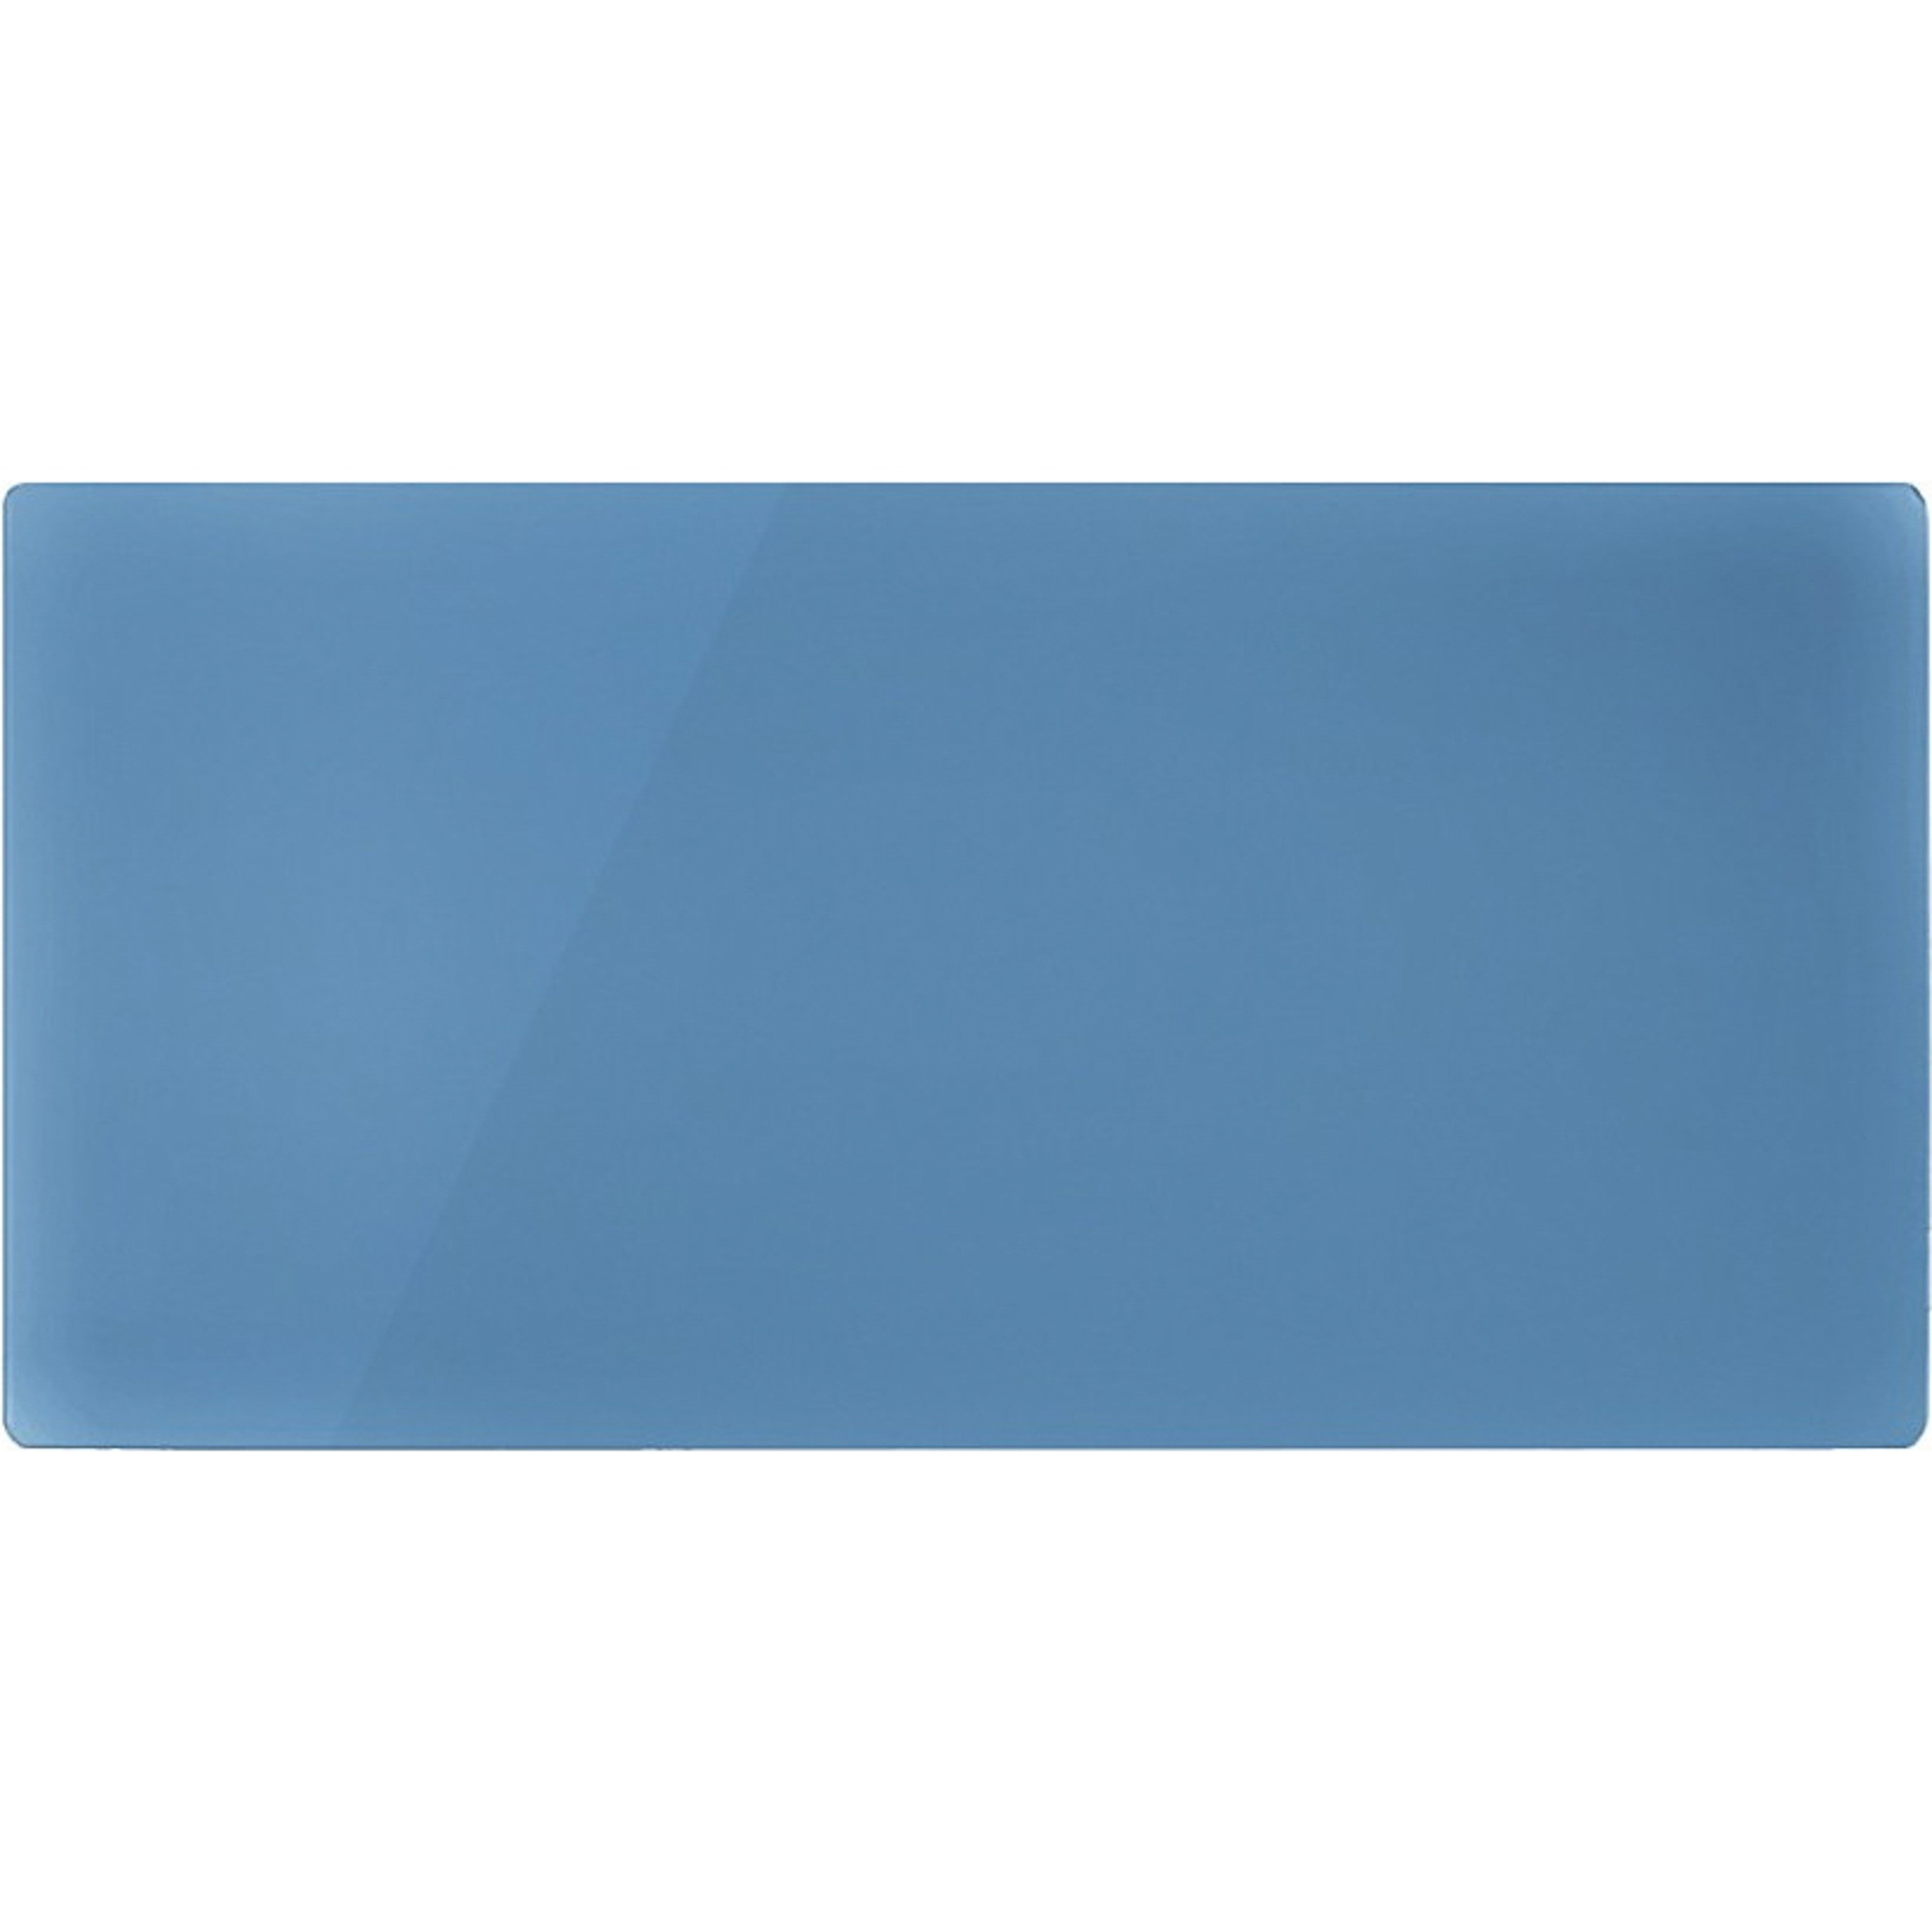 Декоративная панель Nobo NDG4 052 Retro Blue беспроводной блок nobo sikom gsm